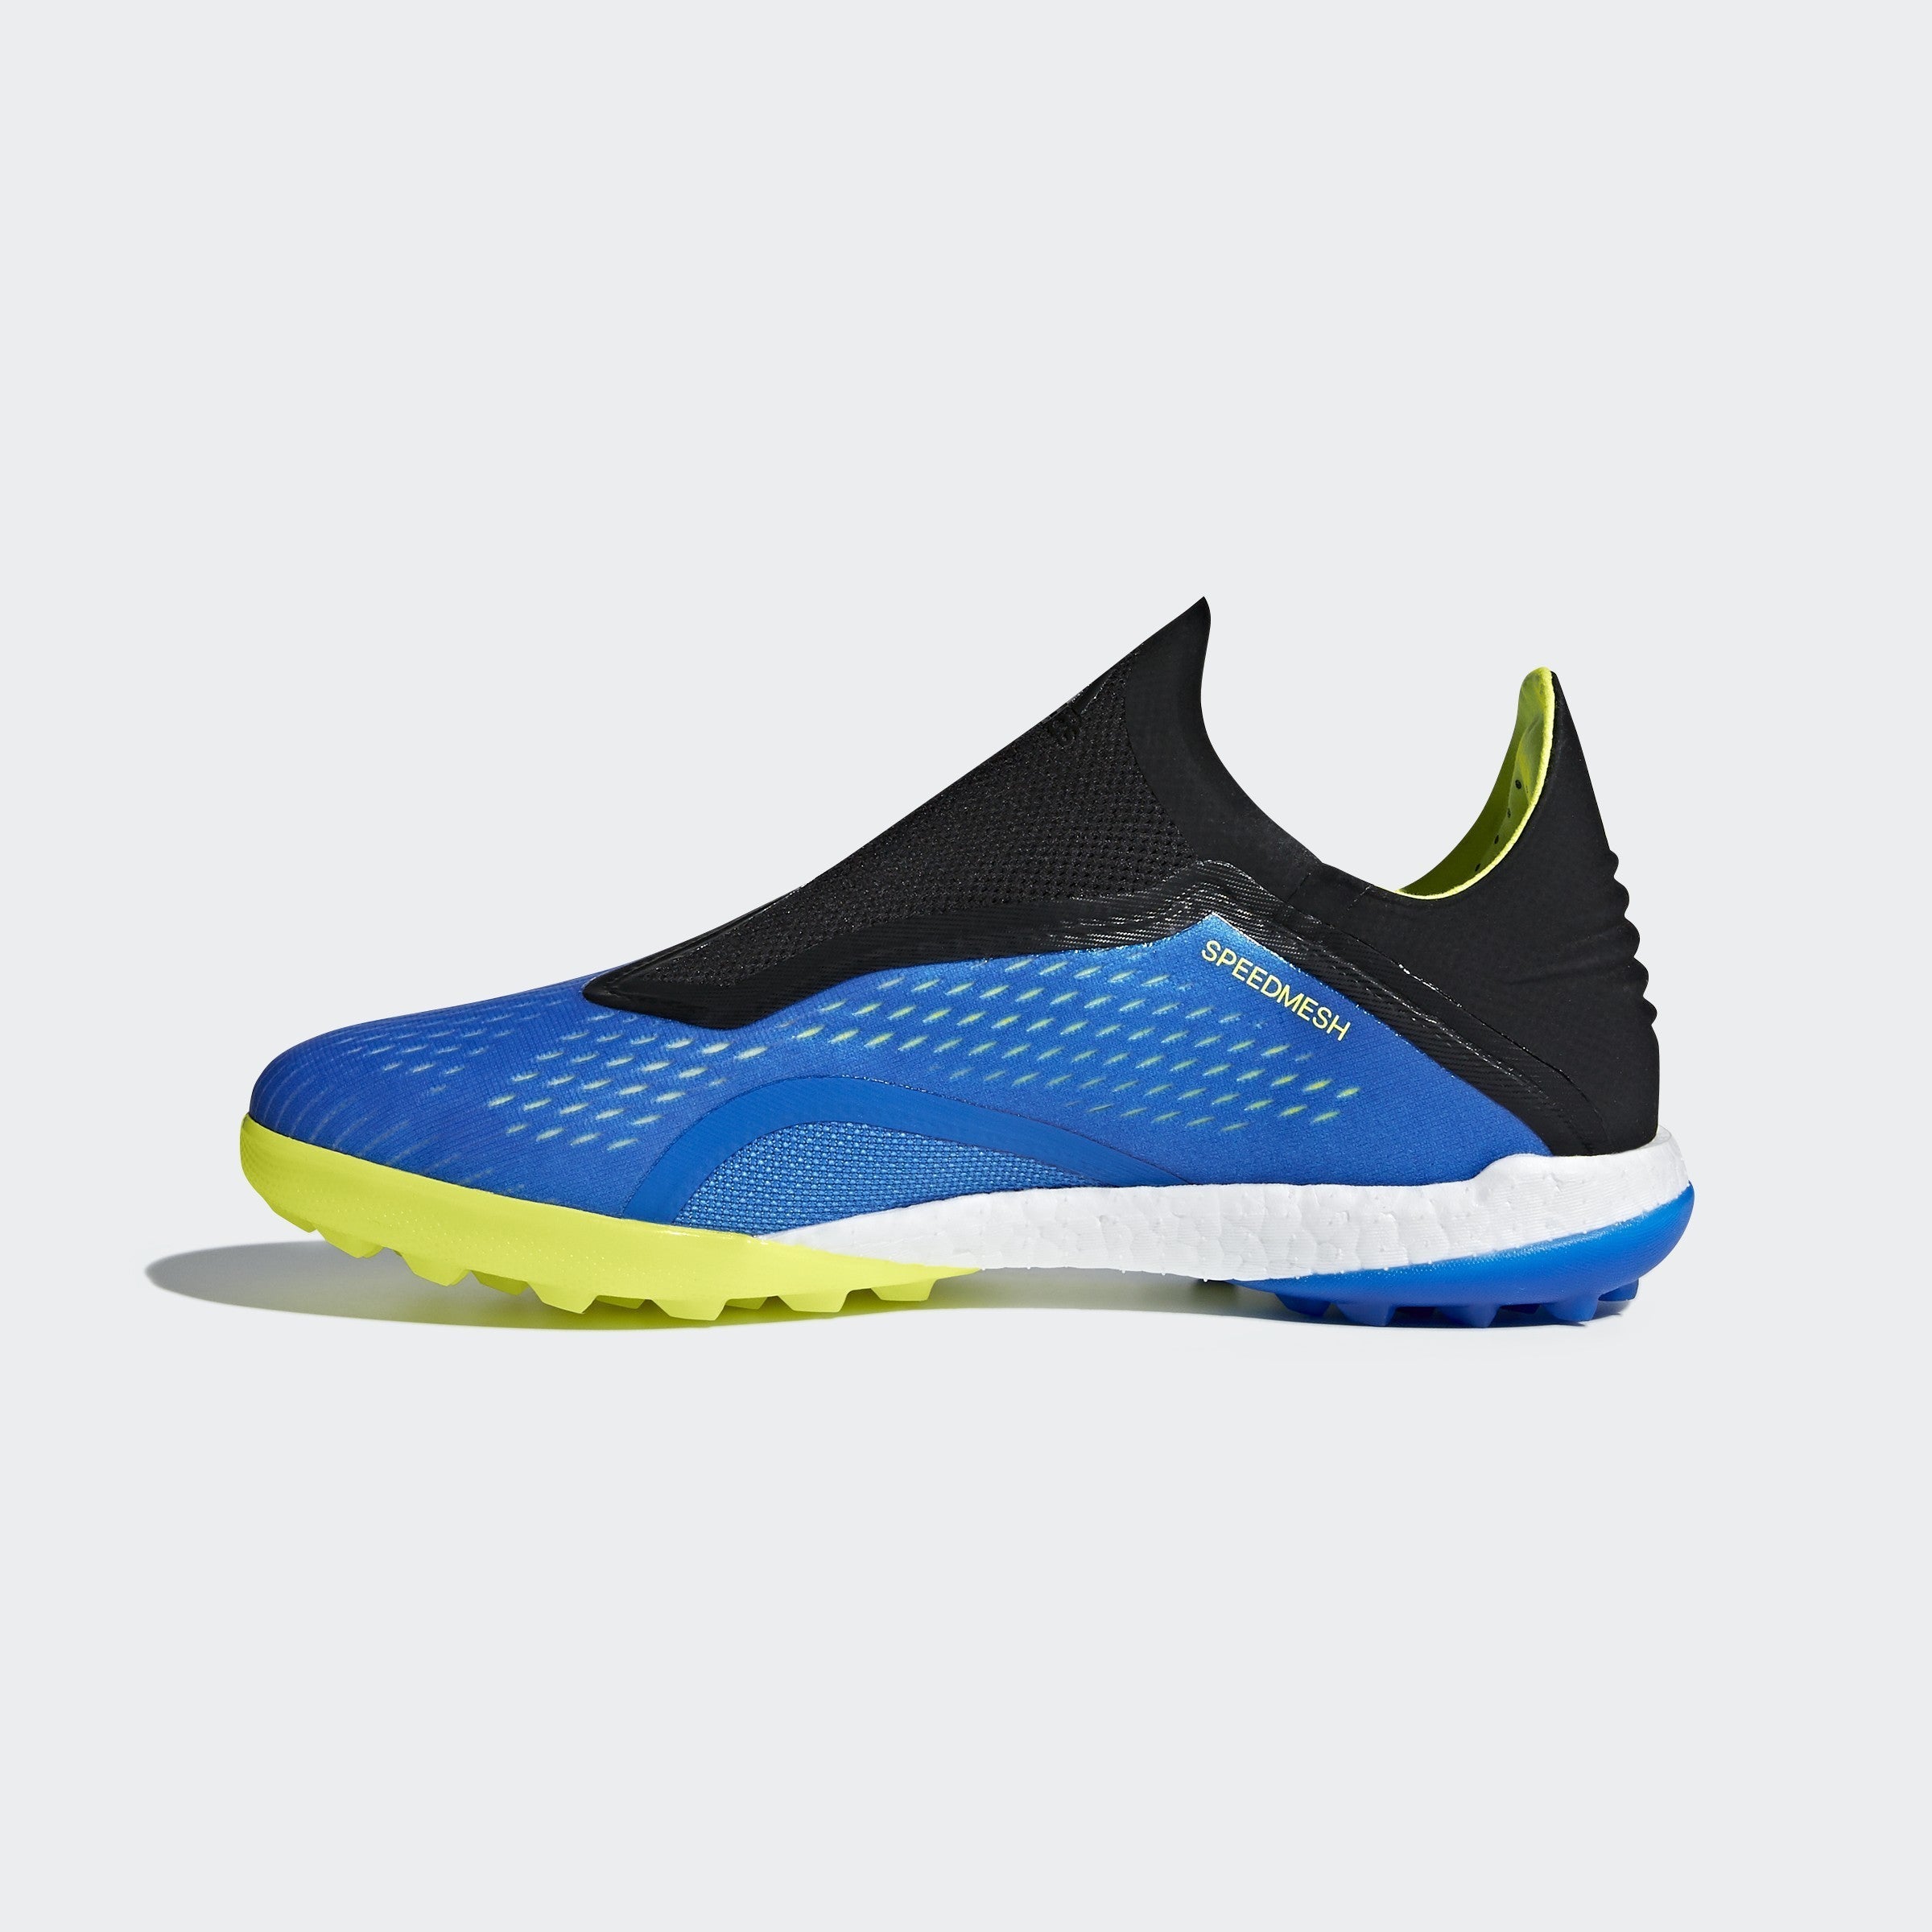 Men's X 18 + Soccer Shoes - Blue Solar/Yellow Core/Black